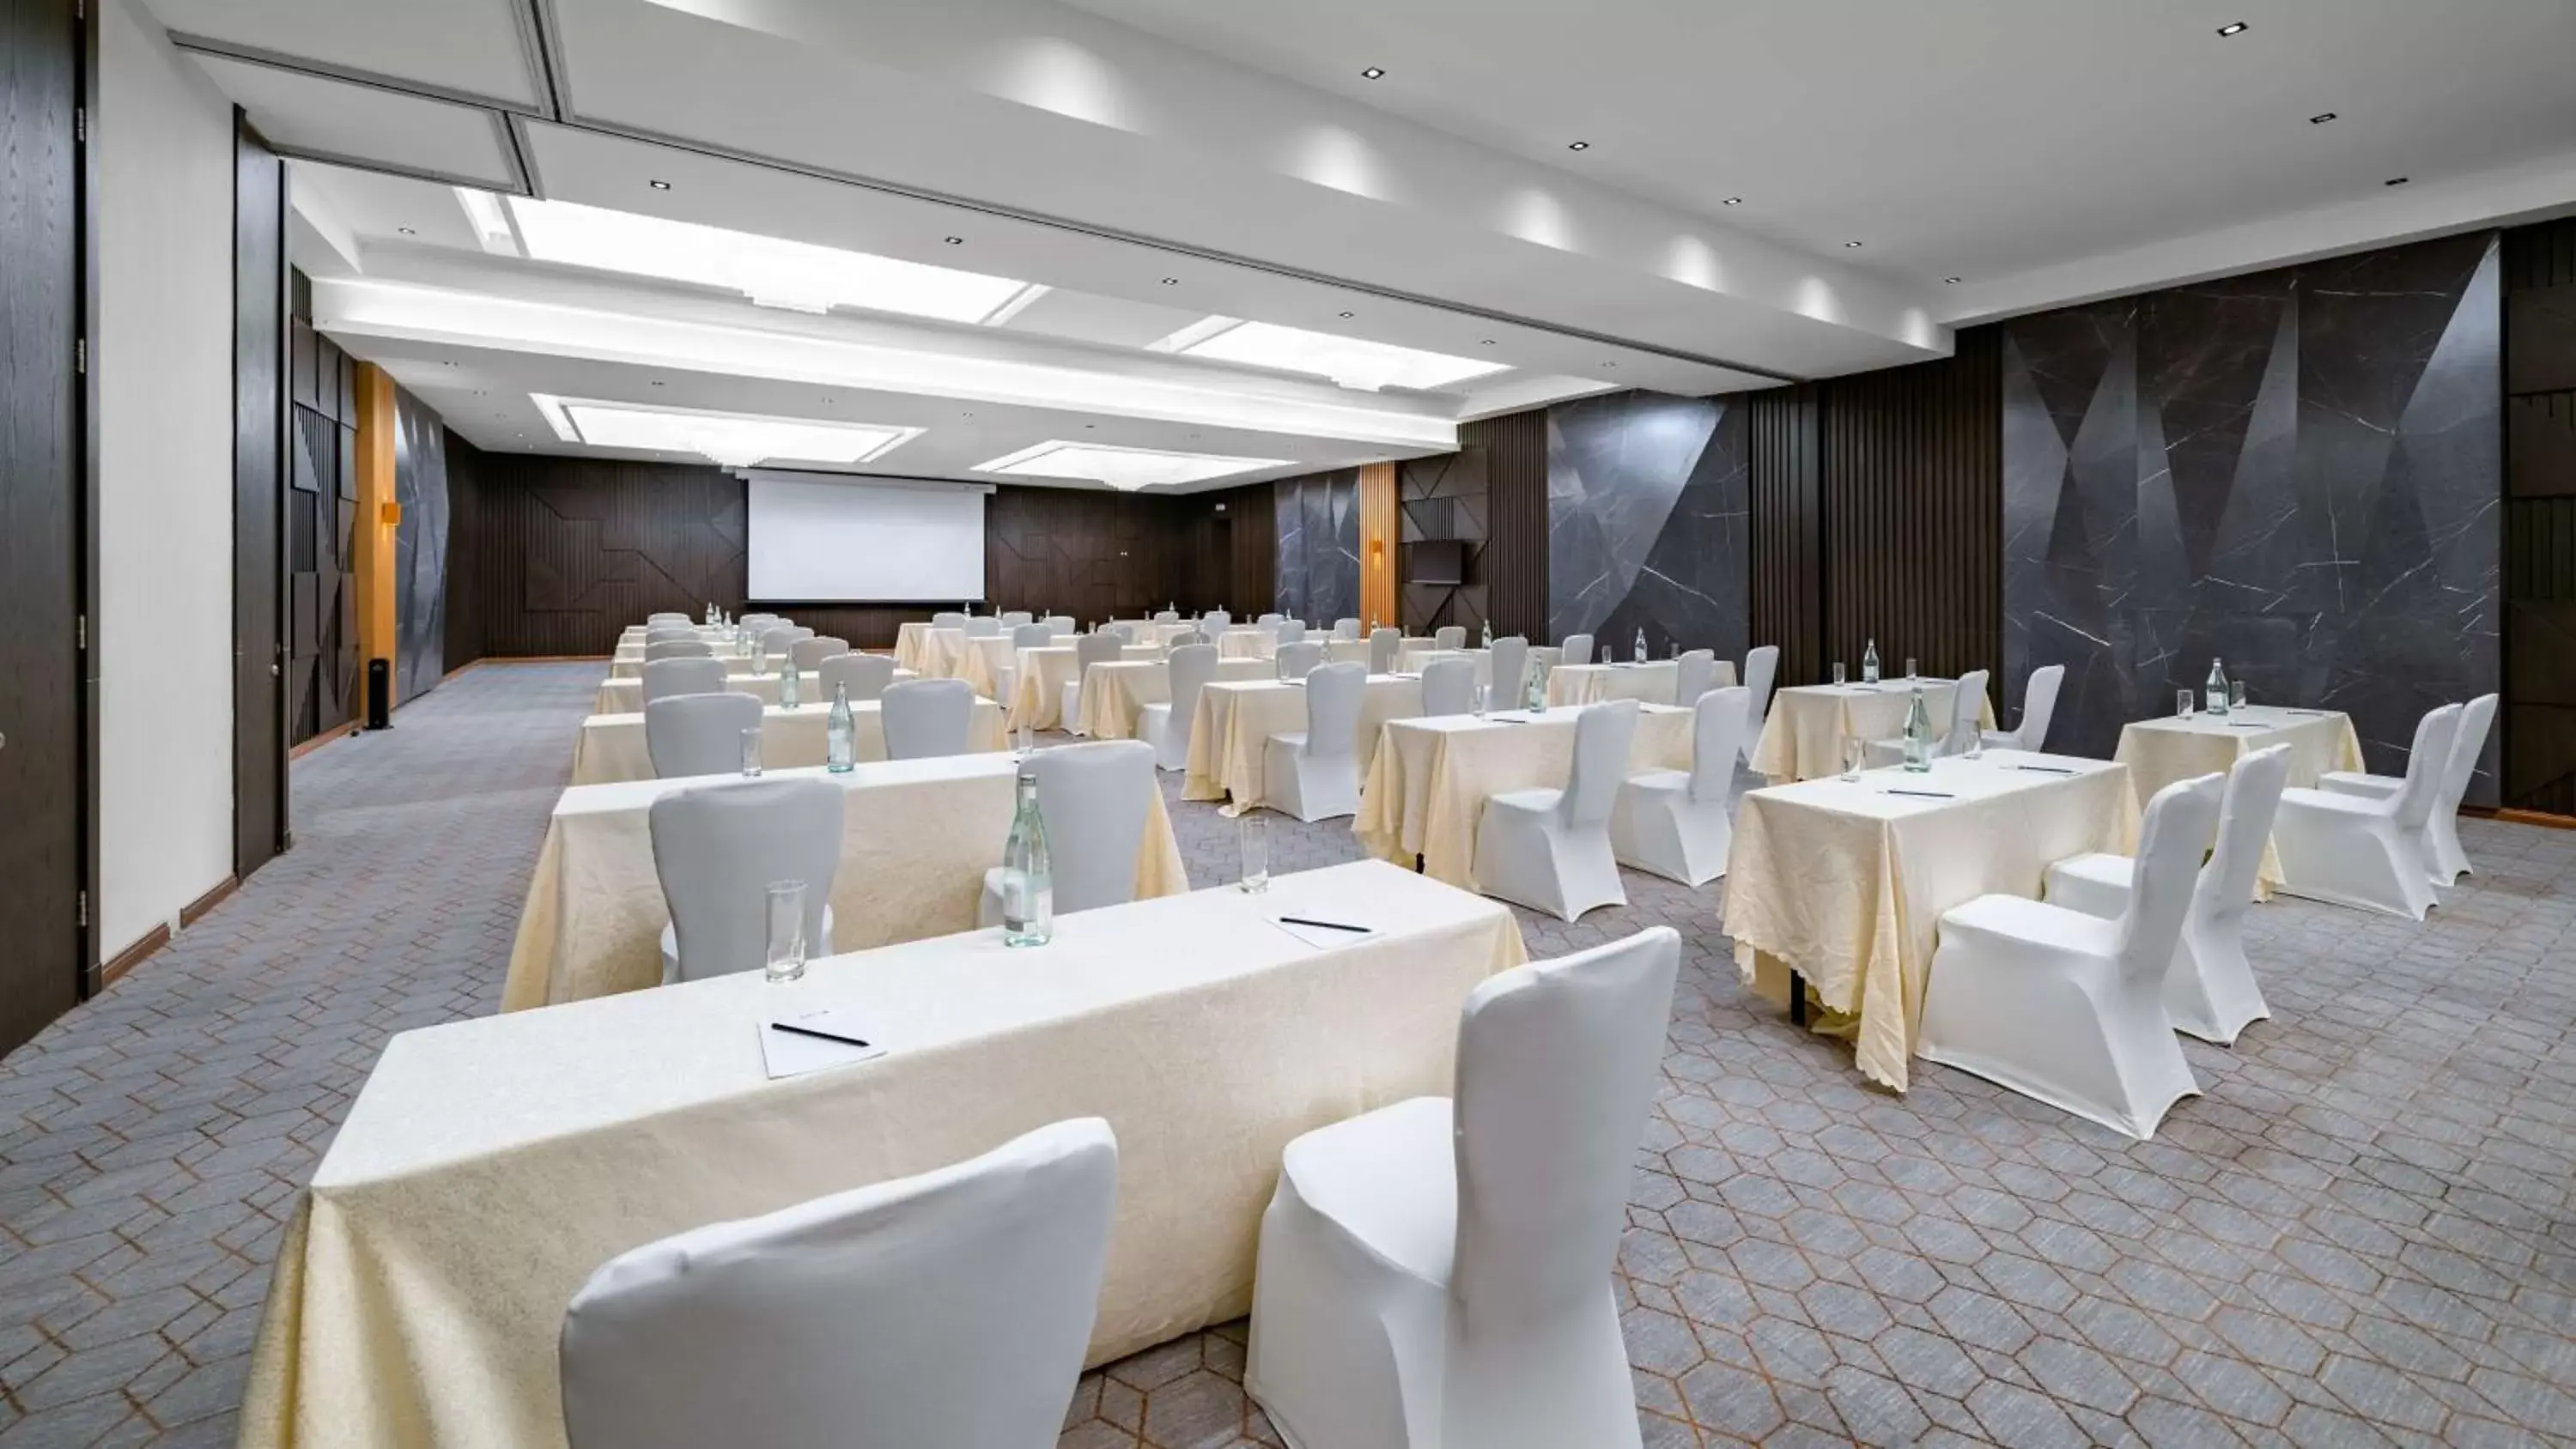 Meeting/conference room in Radisson Blu Hotel Riyadh Qurtuba